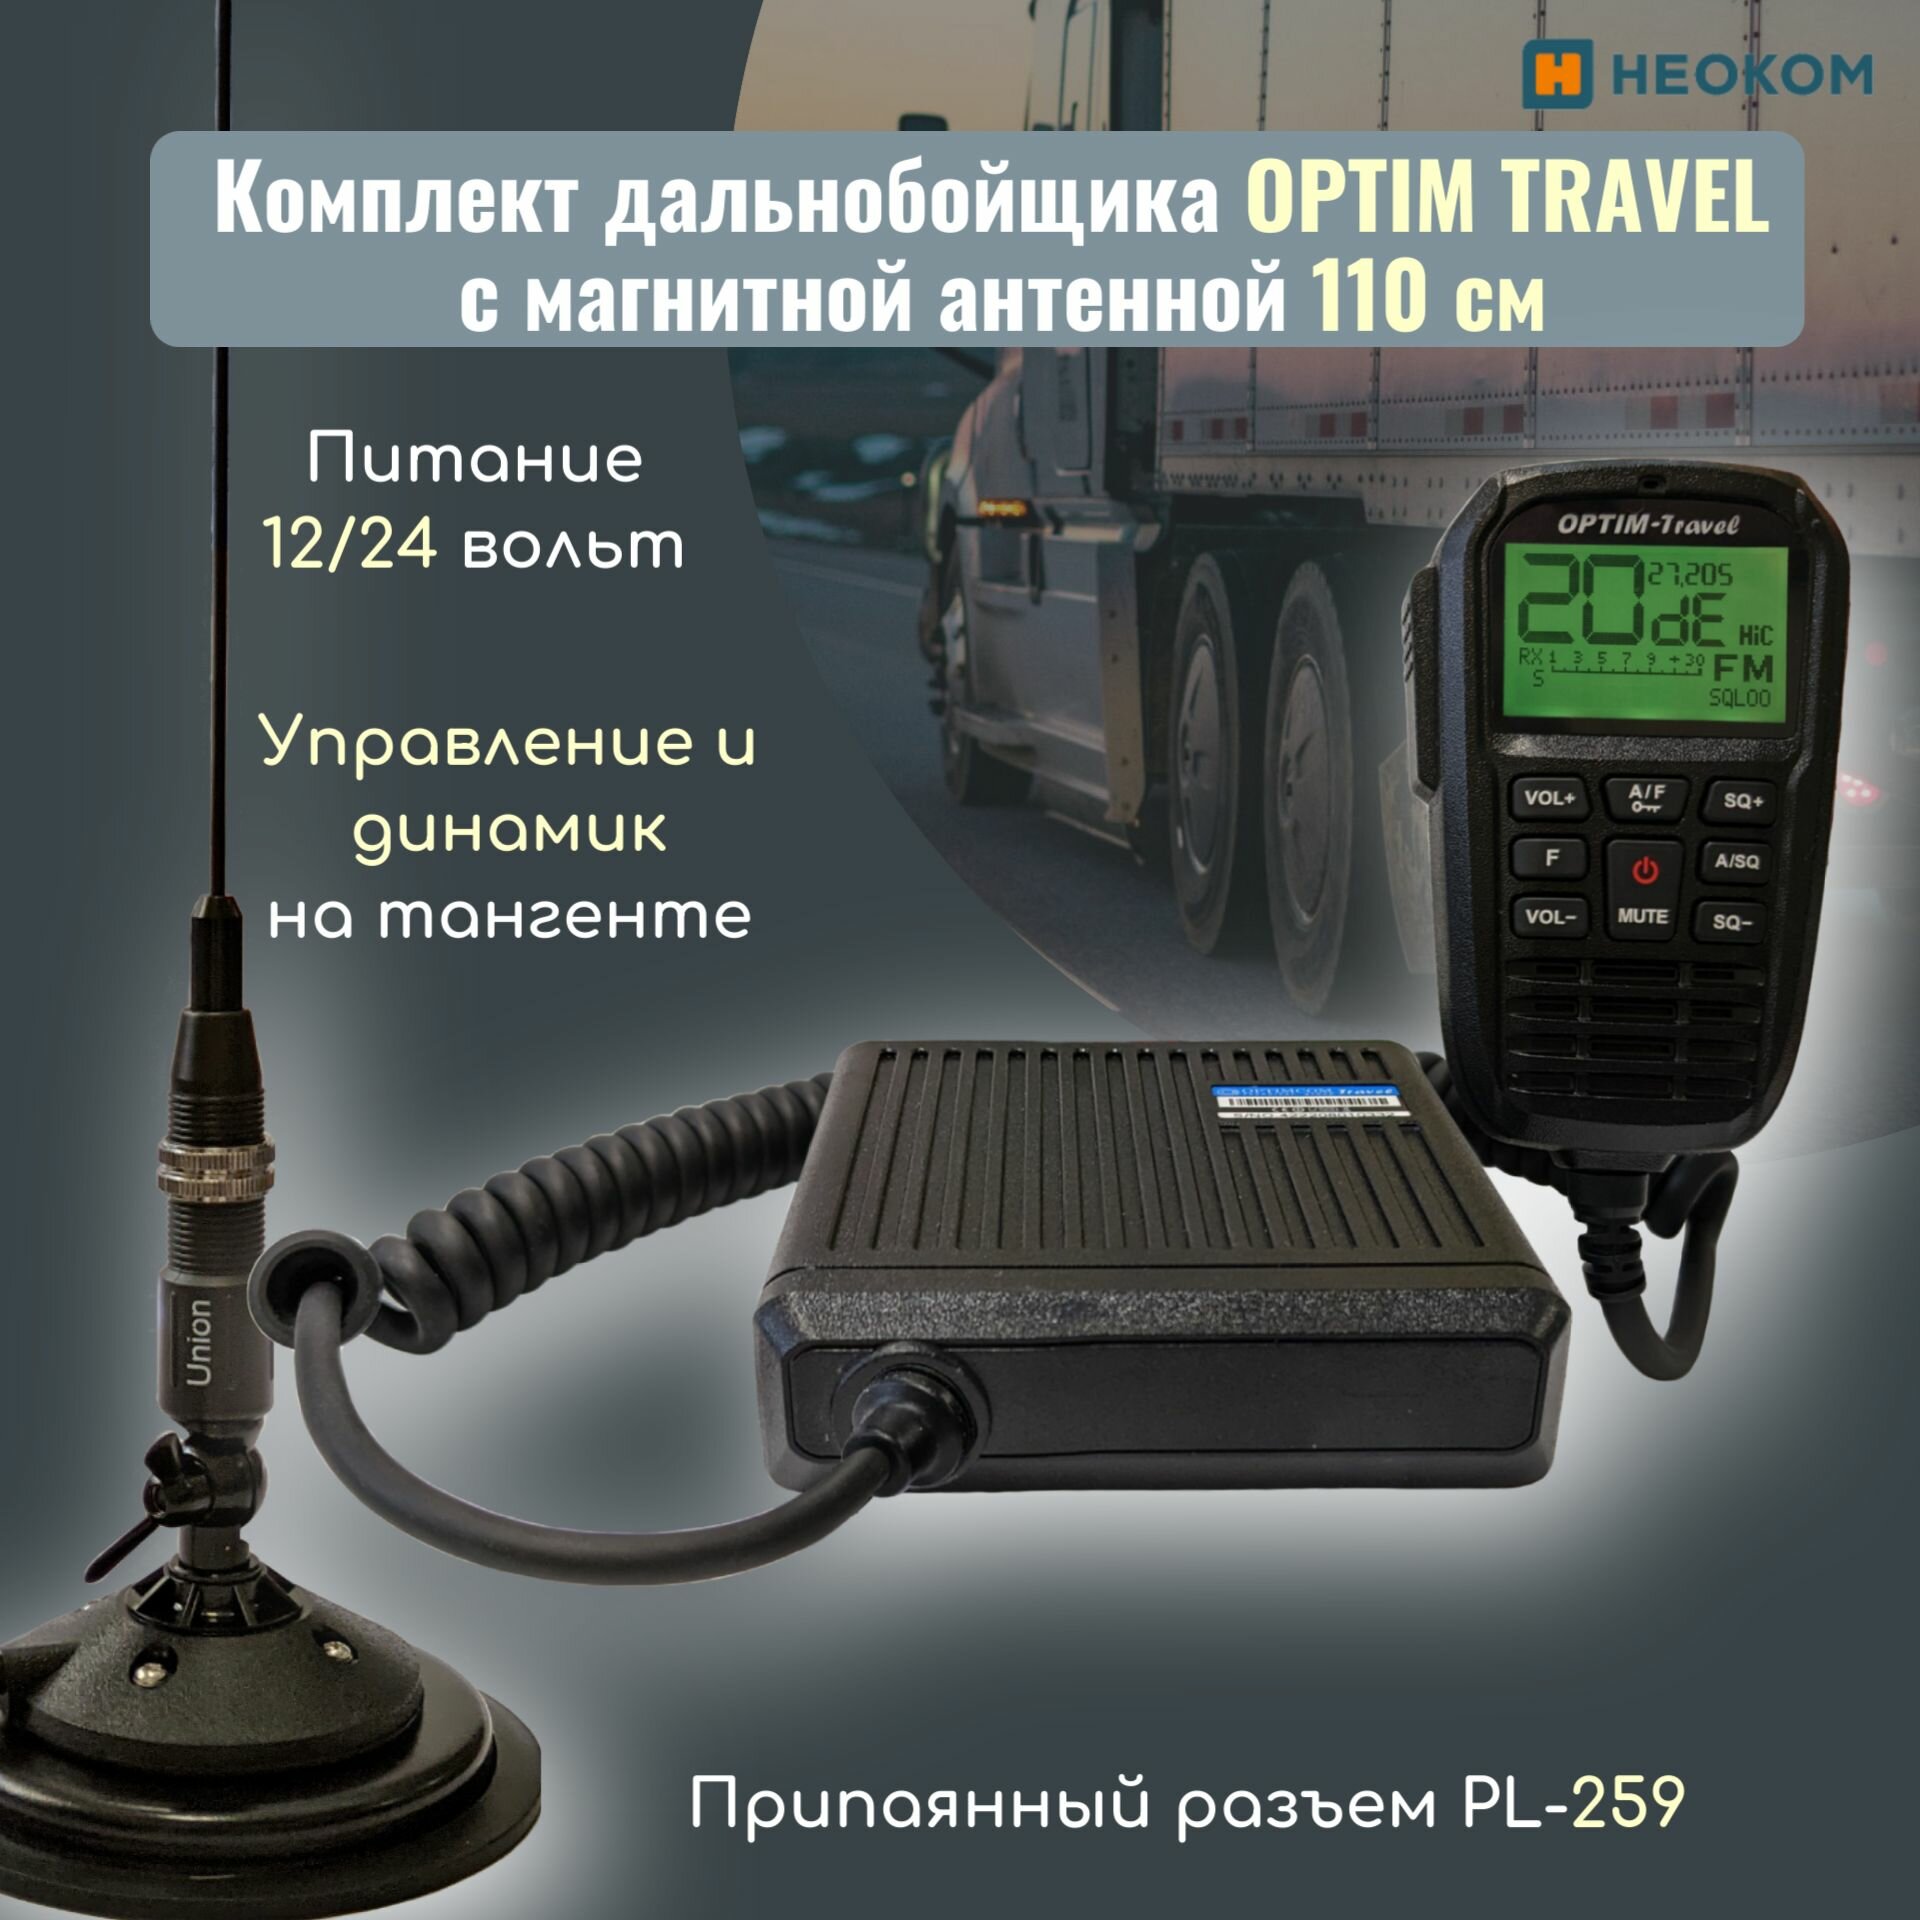 Автомобильная радиостанция Optim Travel в комплекте с магнитной антенной 11 метра